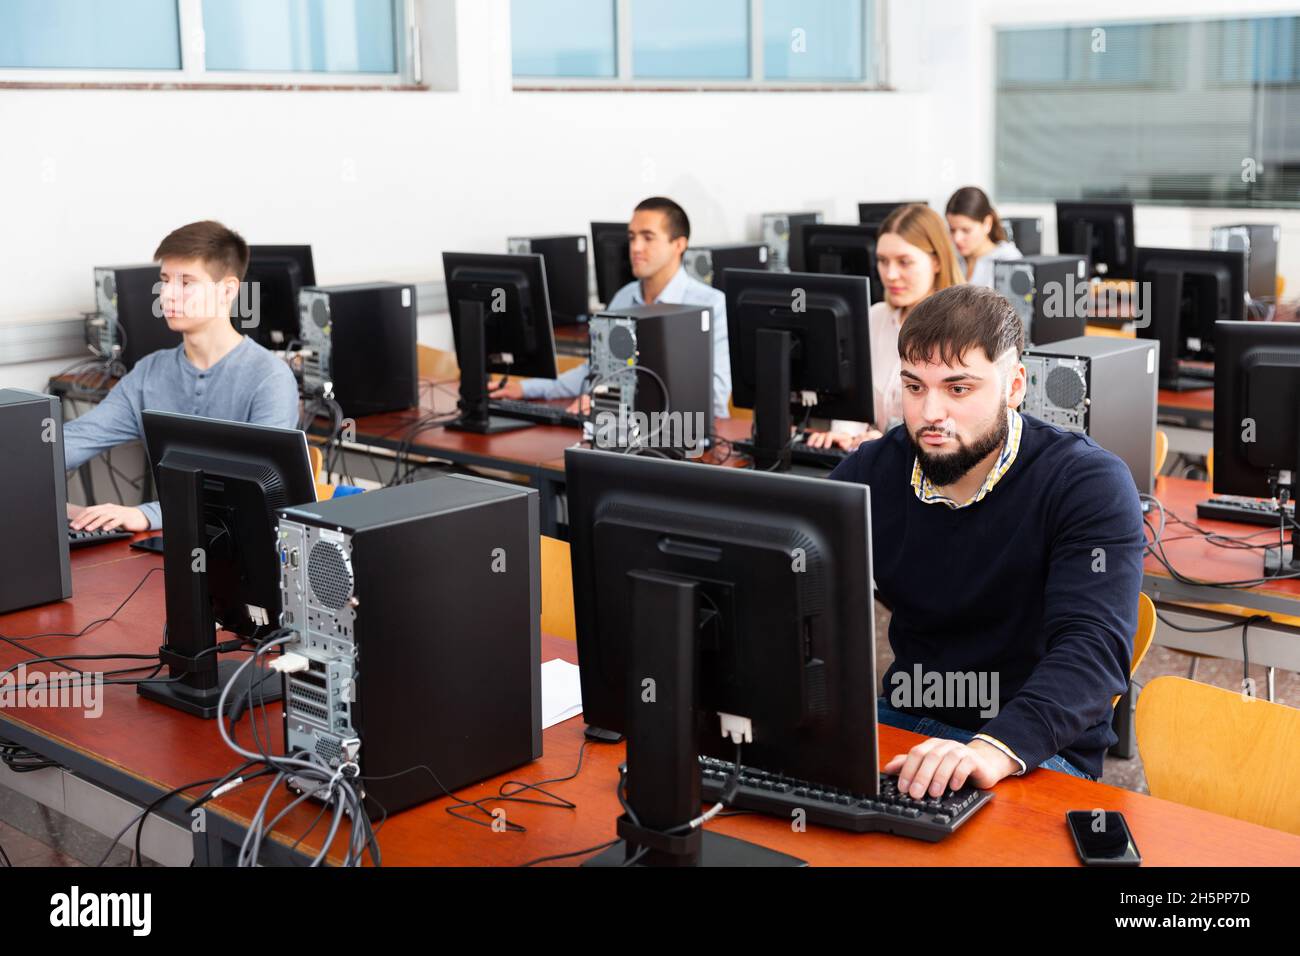 Les étudiants travaillant sur des ordinateurs Banque D'Images